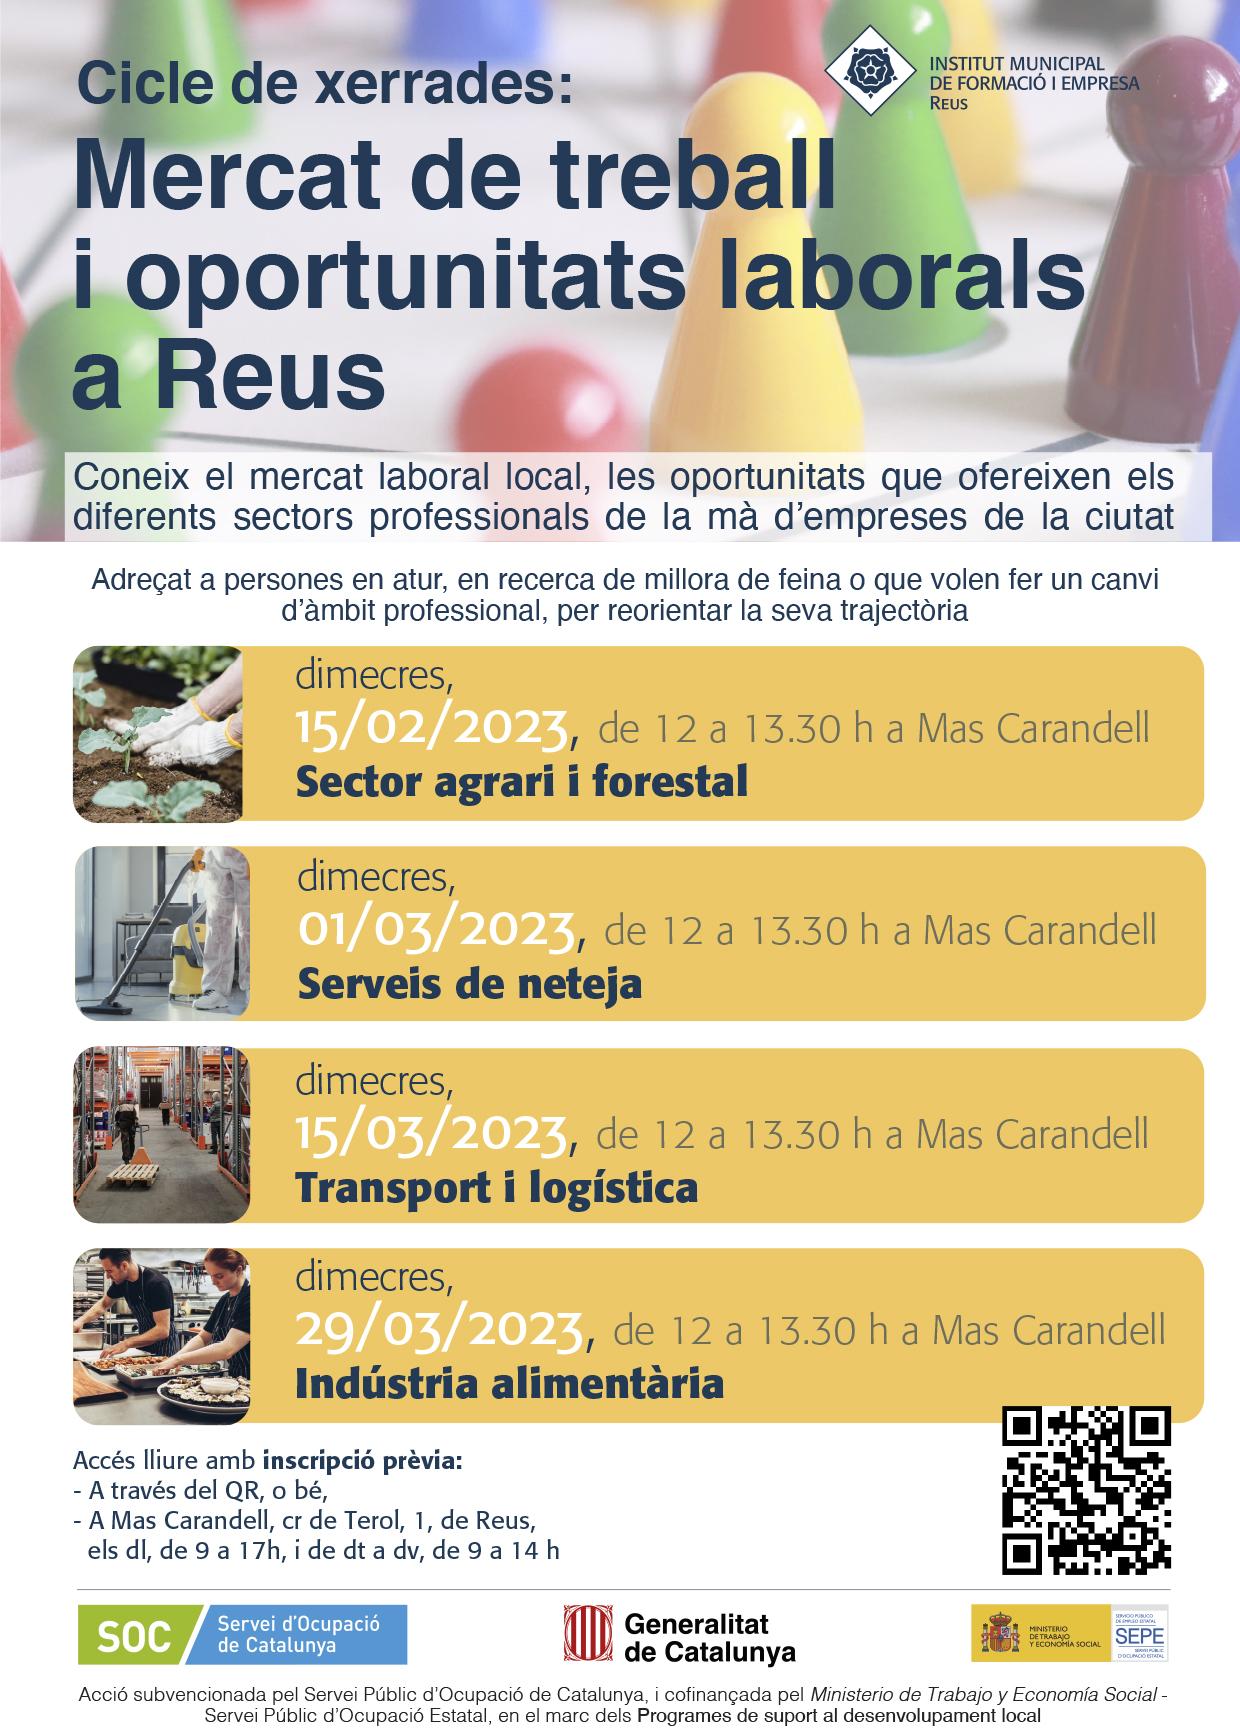 Mercat de treball i oportunitats laborals a Reus. Sector agrari i forestal